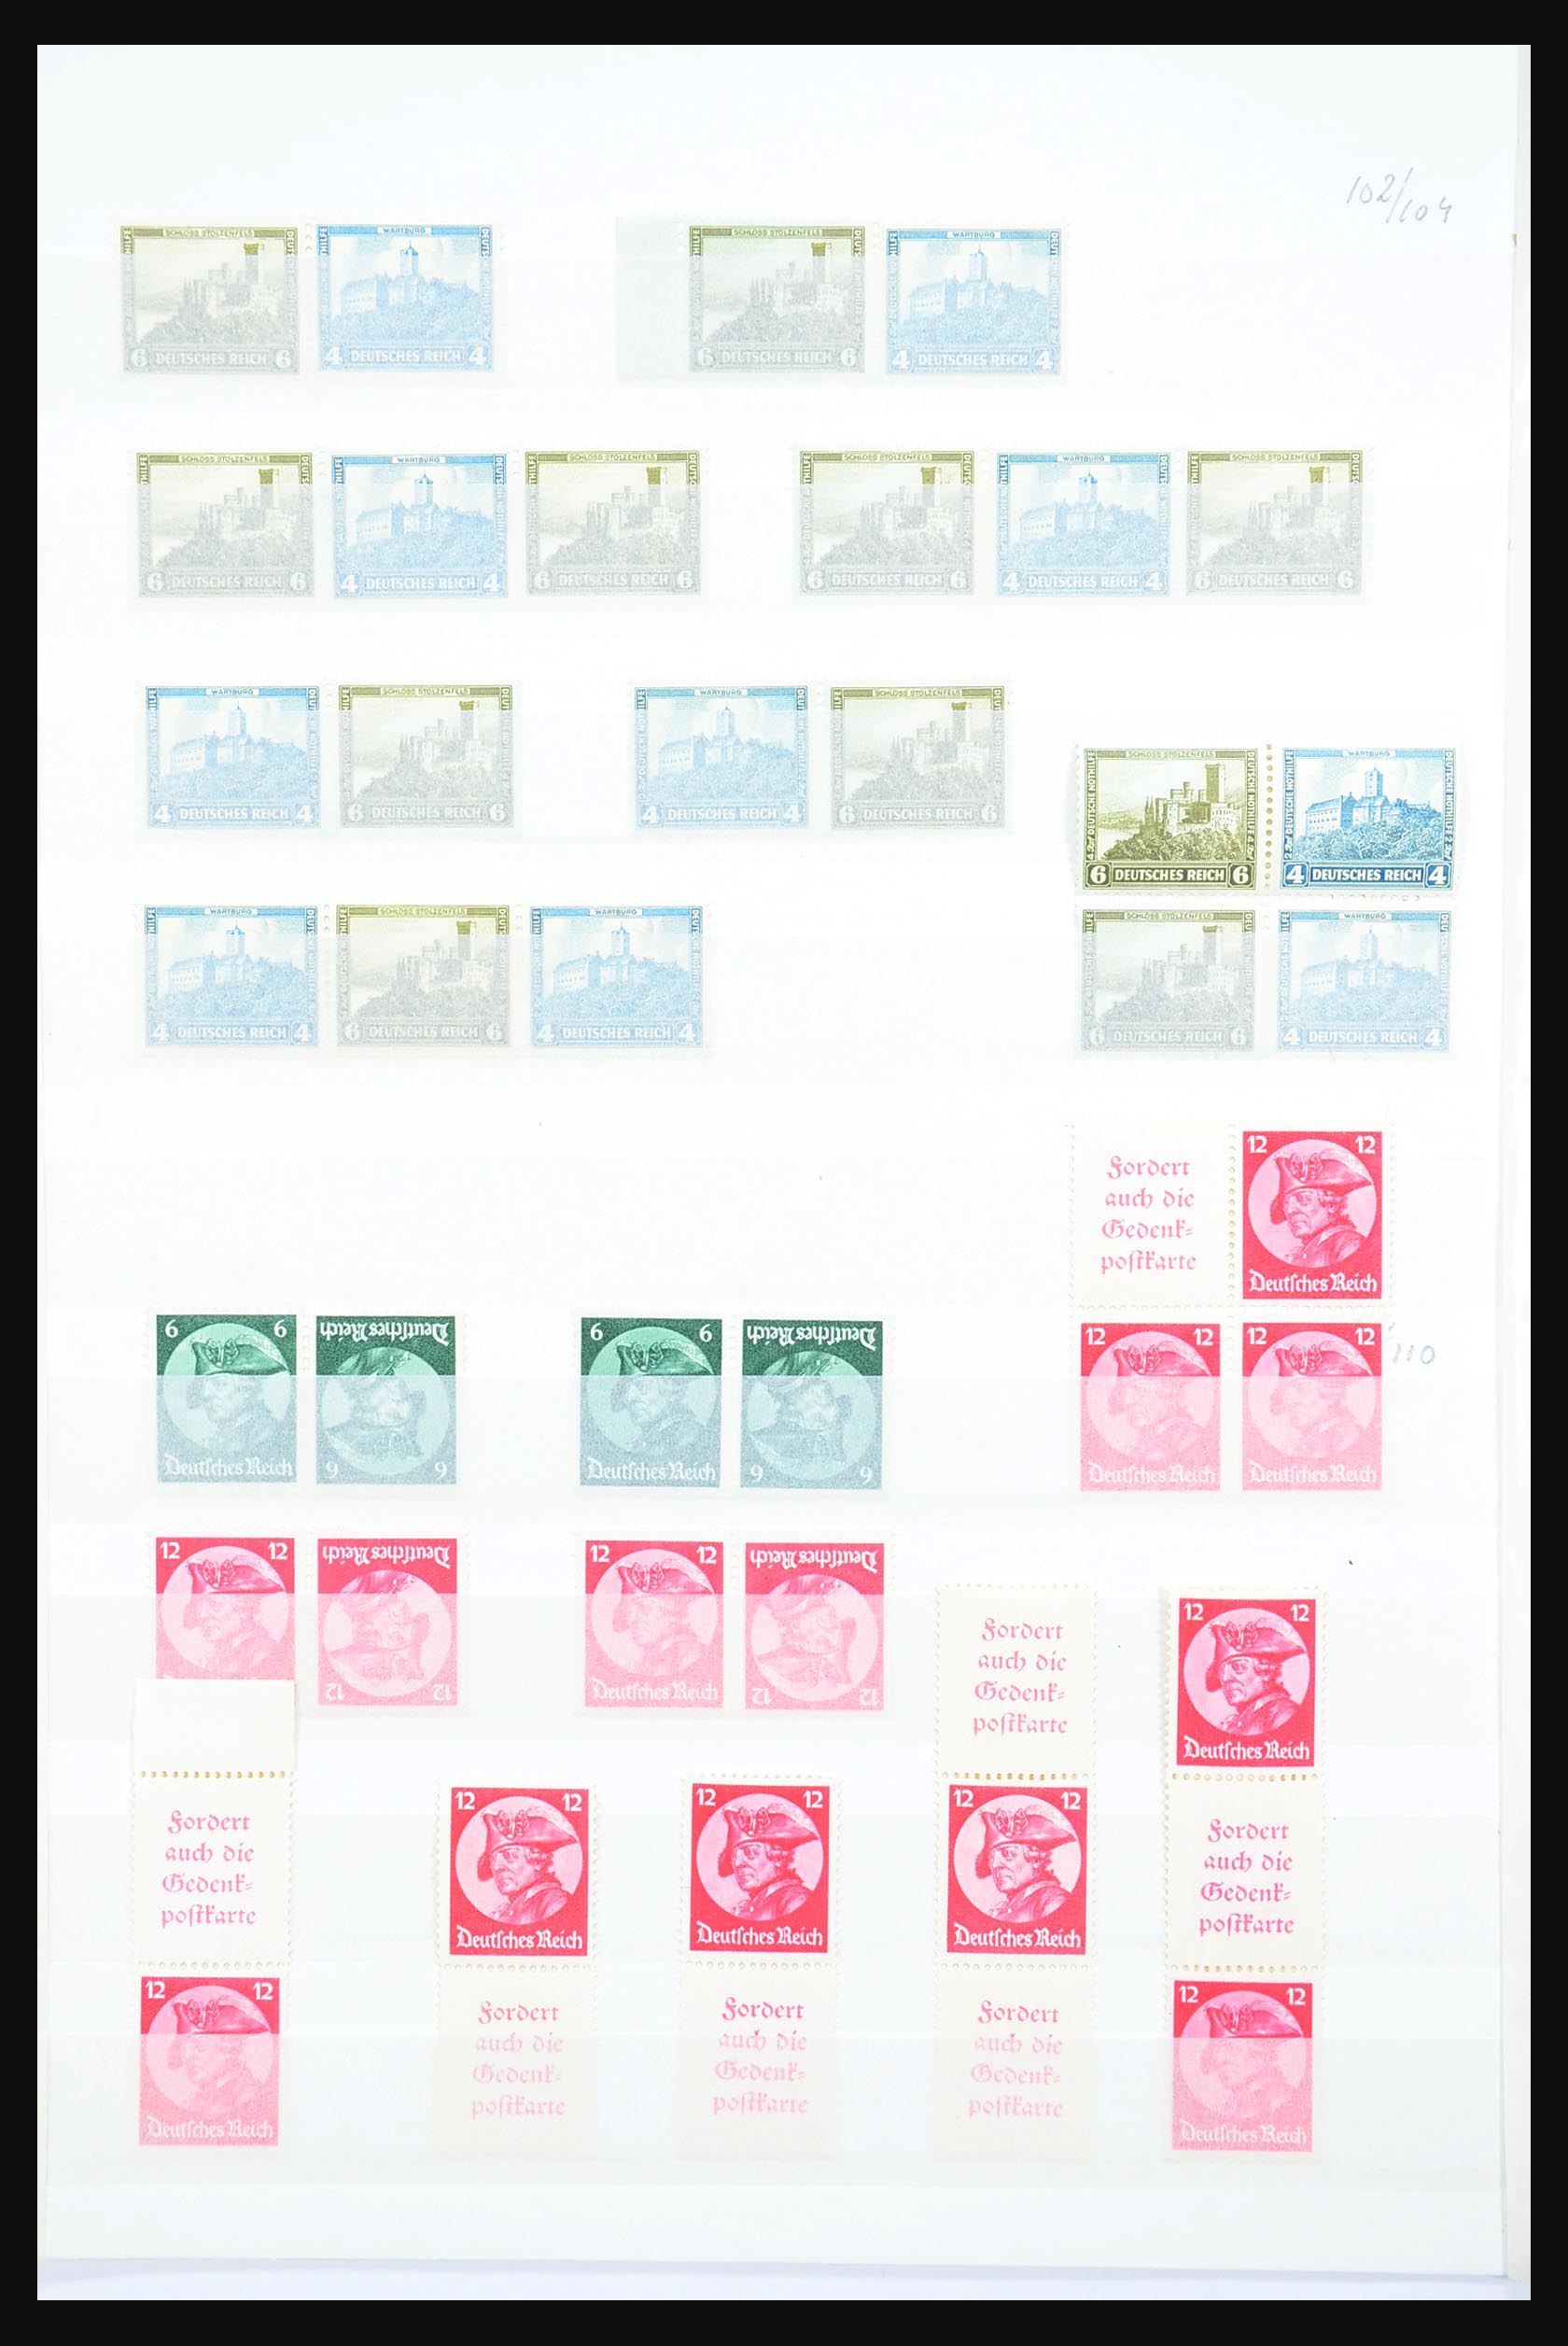 31391 010 - 31391 Duitse Rijk combinaties postfris 1913-1941.